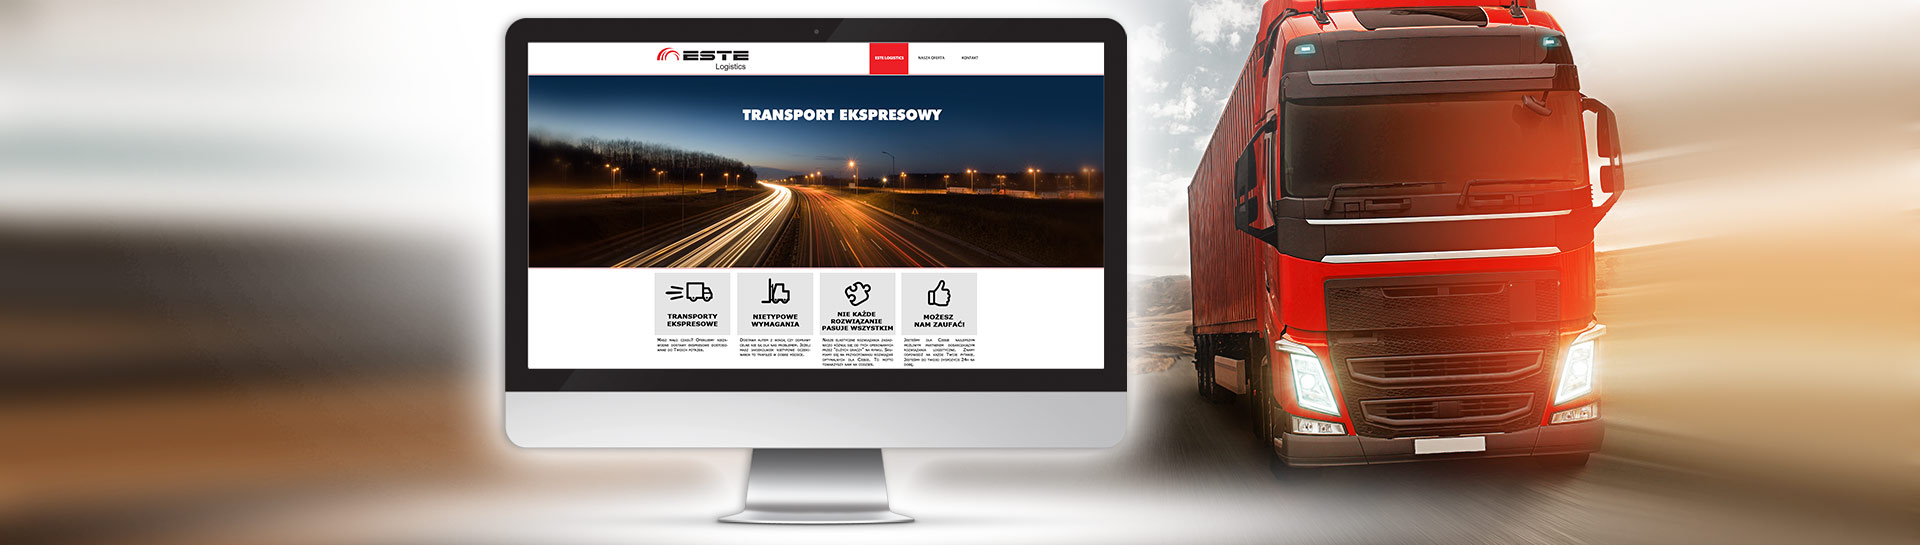  Strona WWW dla firmy ESTE logistic - Agencja Reklamowa ImagoArt.pl